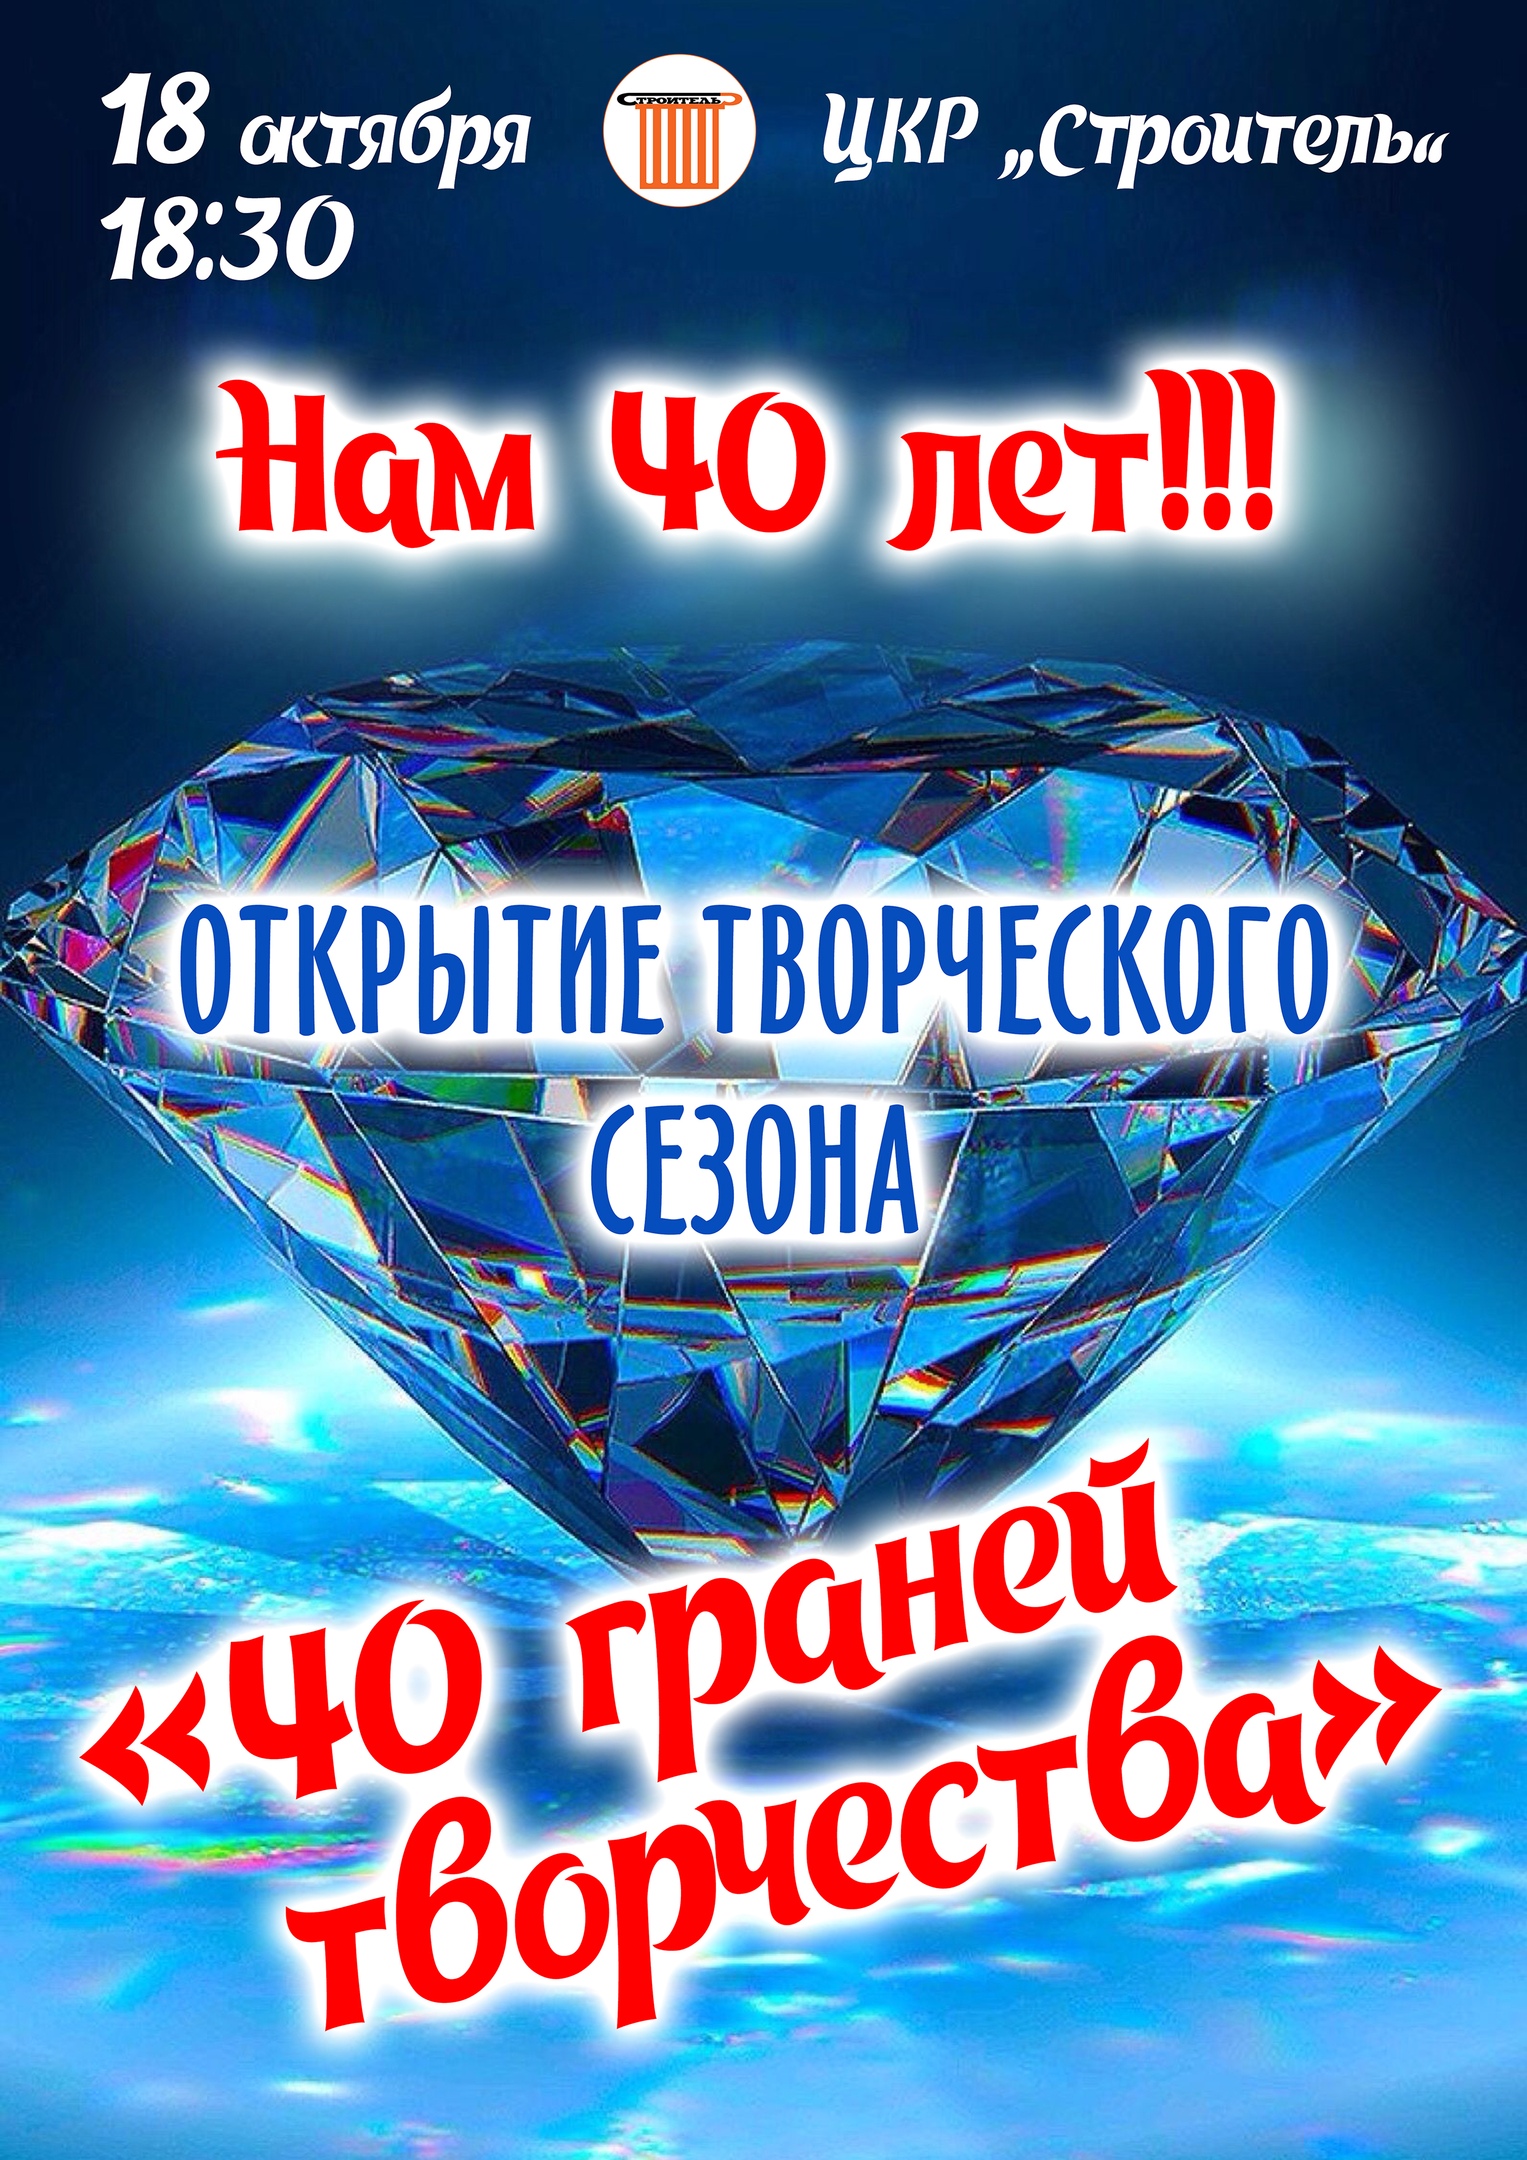 Концерт к 40-летию ЦКР «Строитель»